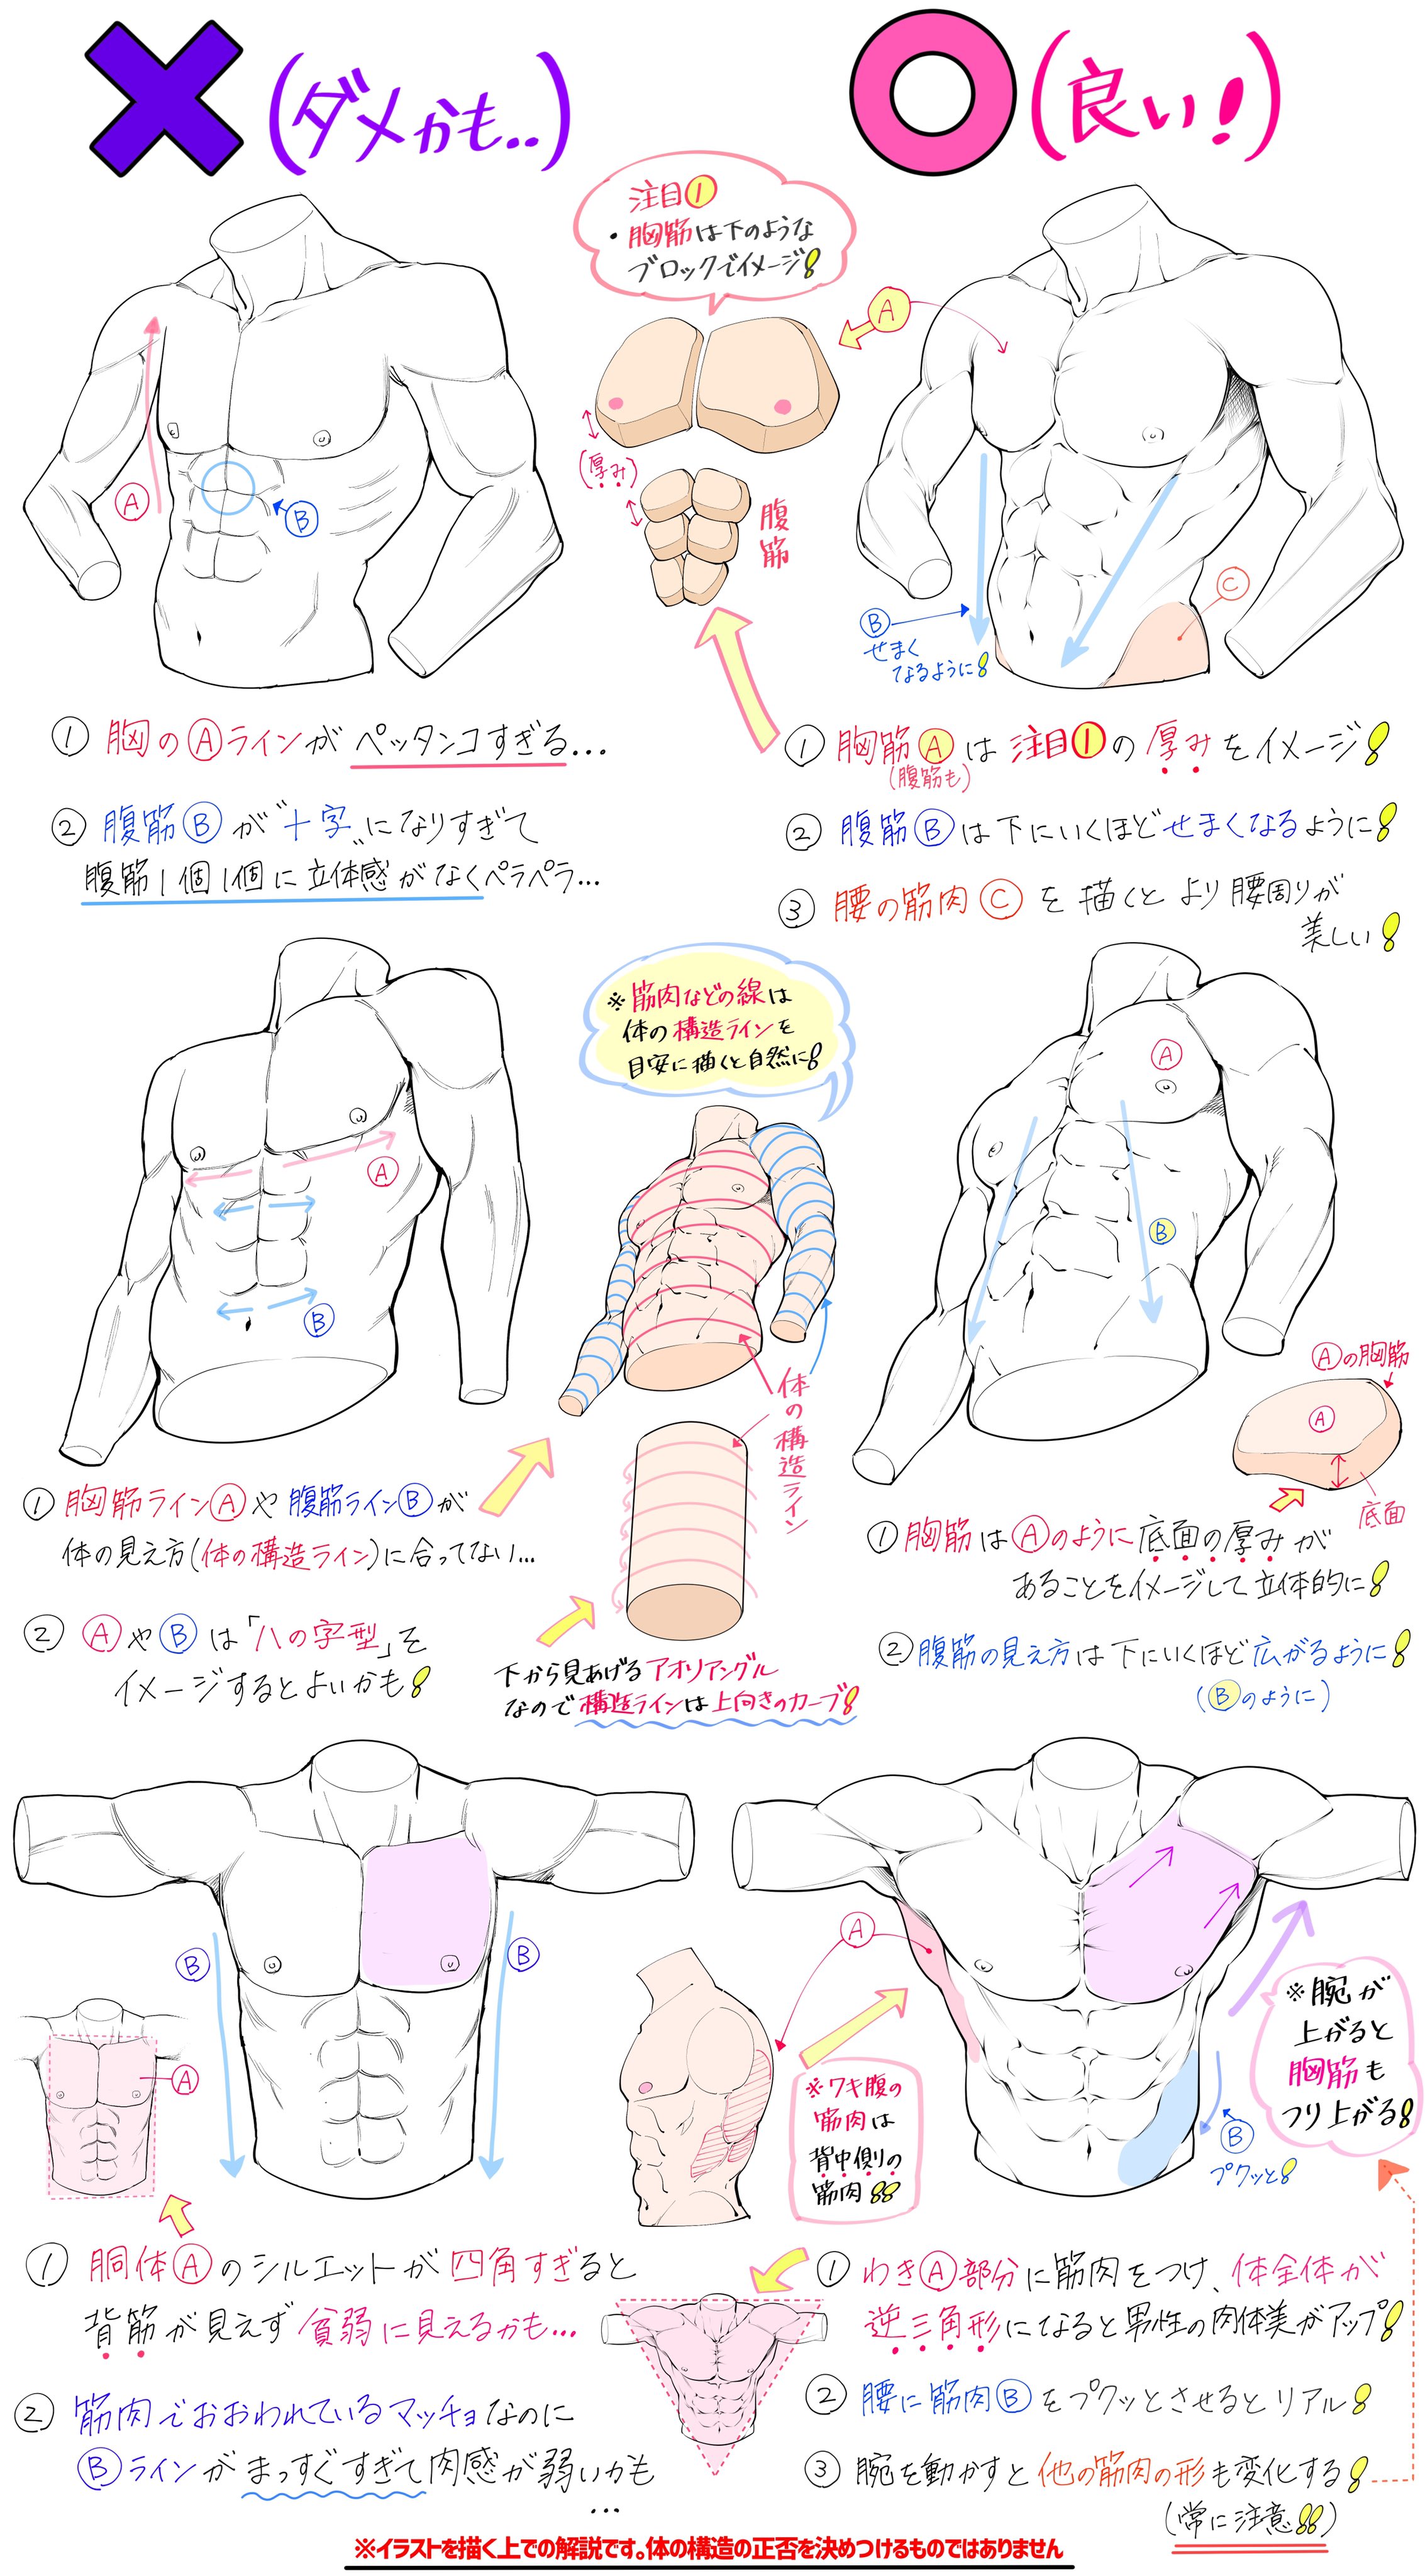 吉村拓也 イラスト講座 男性の筋肉を美しく描きたいときの図解 ダメかも と 良いかも T Co Rfw53hjeur Twitter